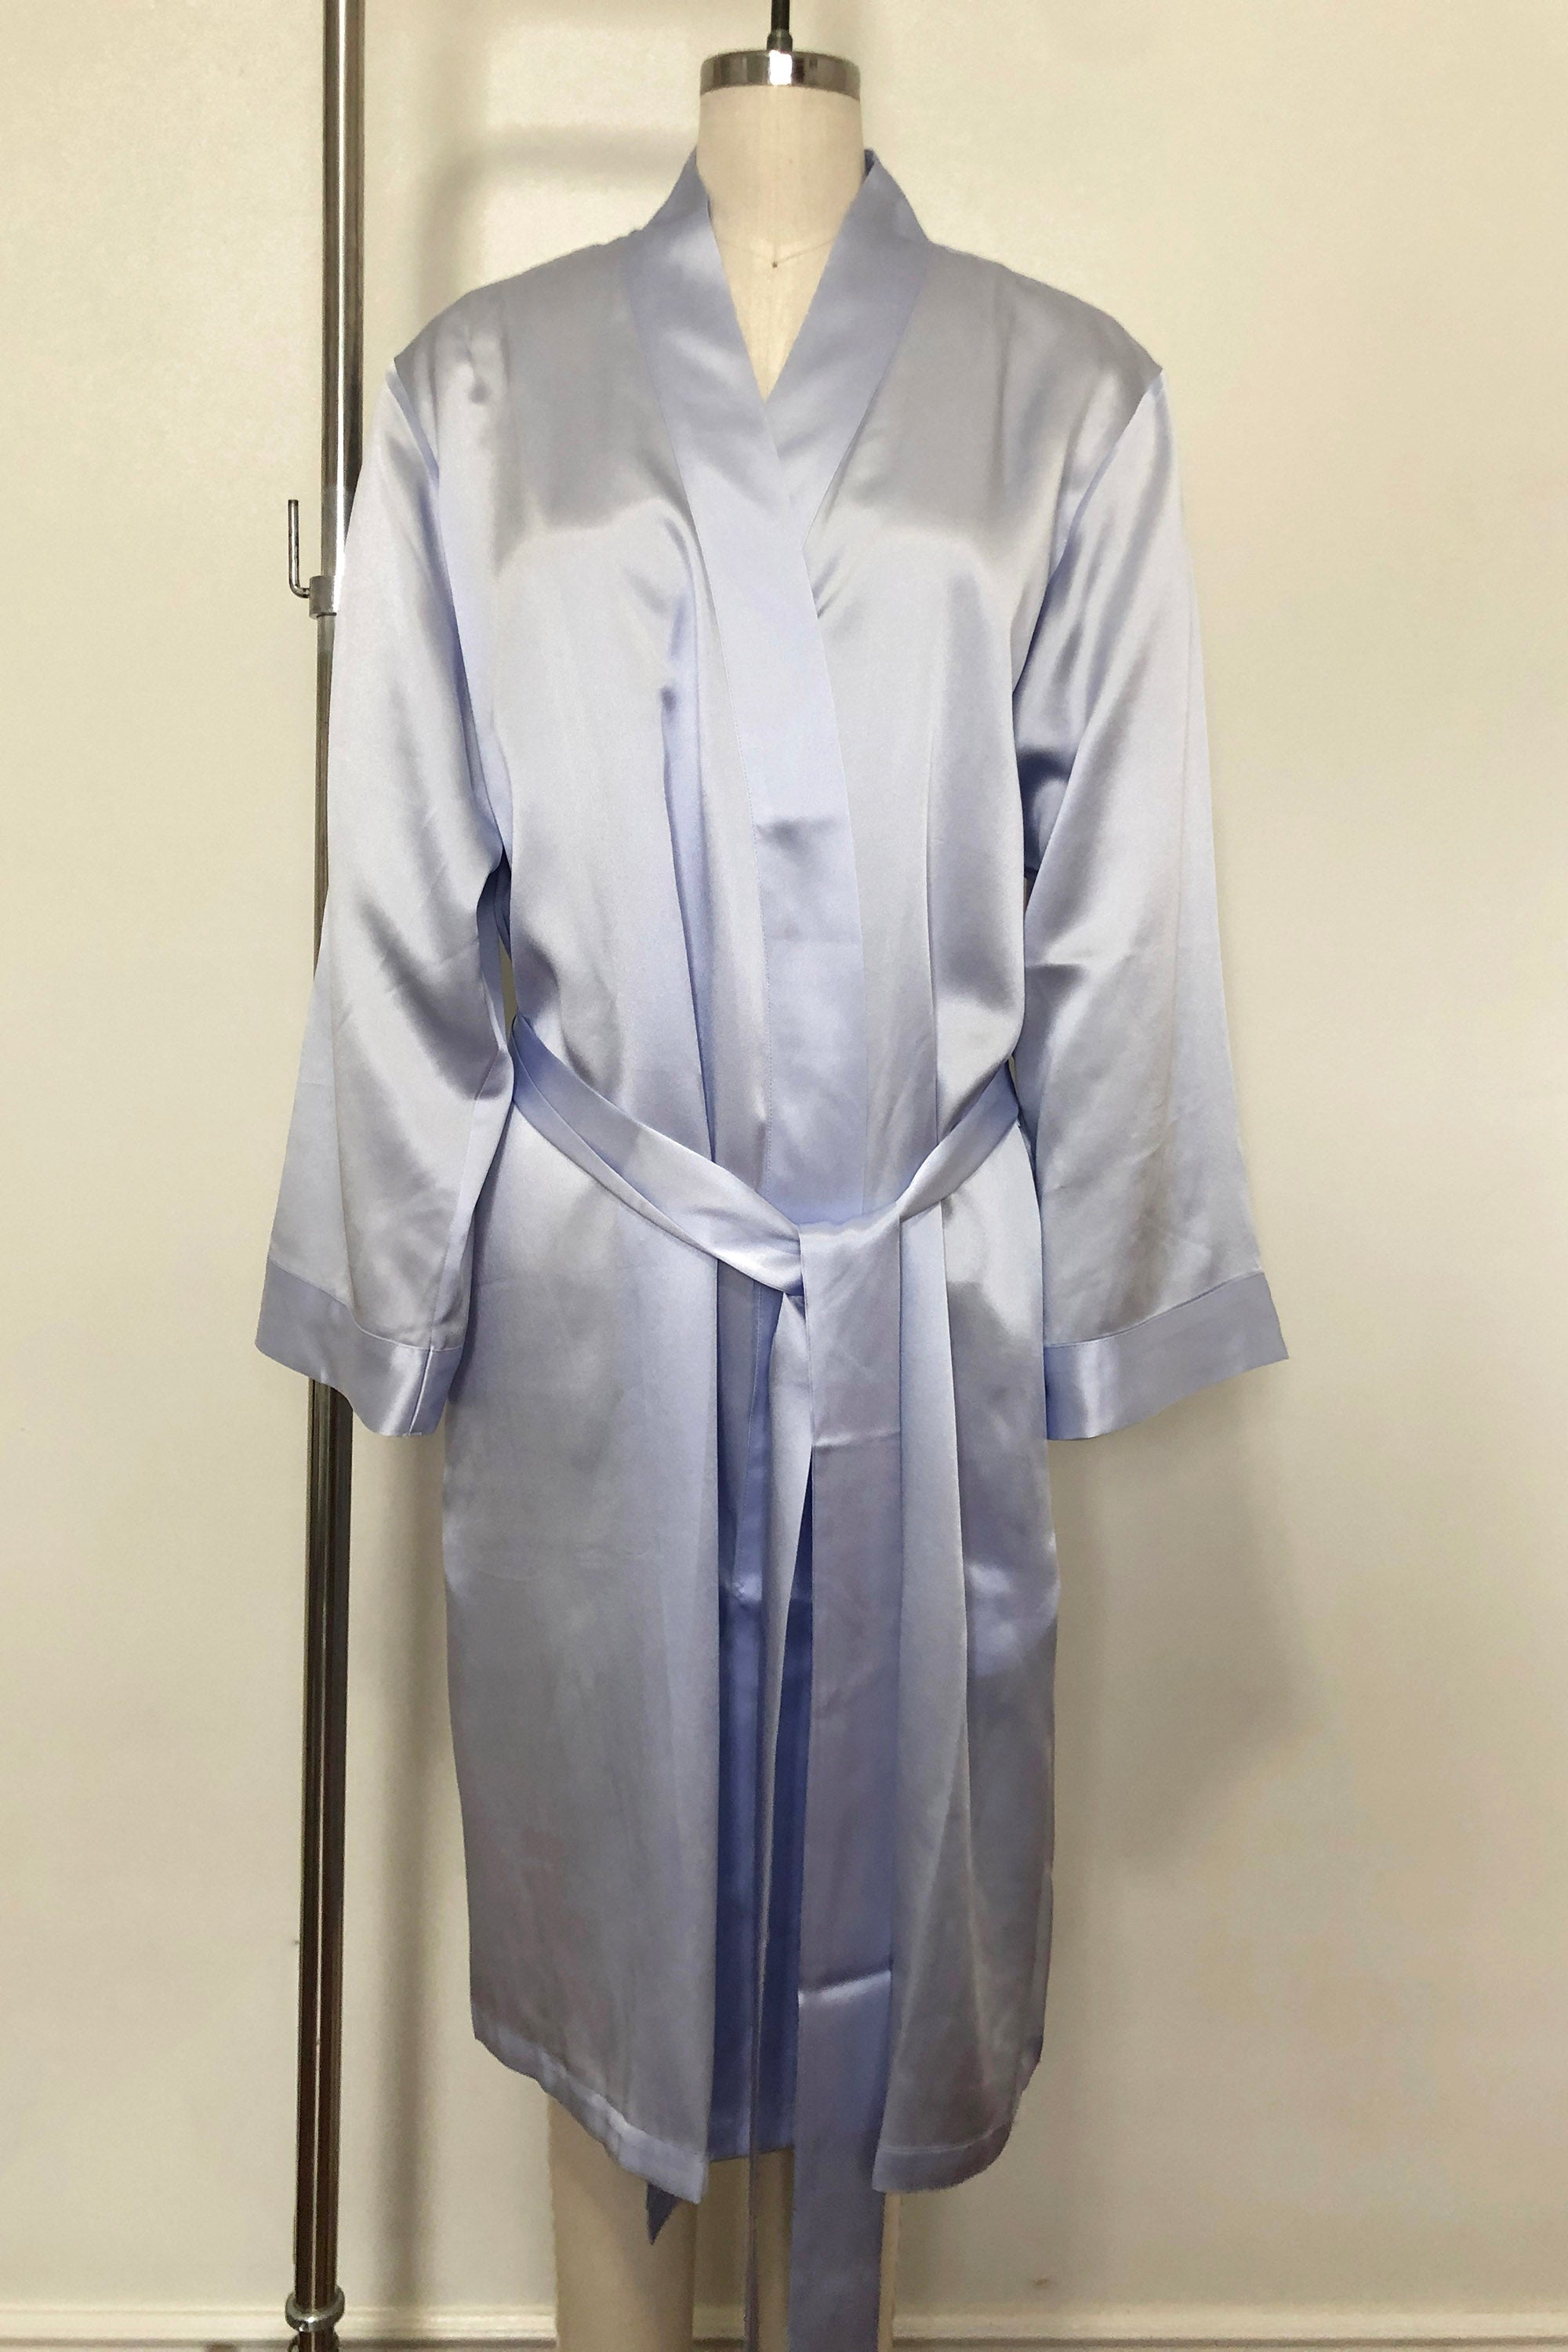 Women's Silk Sleepwear 100% Silk Robe, Light Blue, M